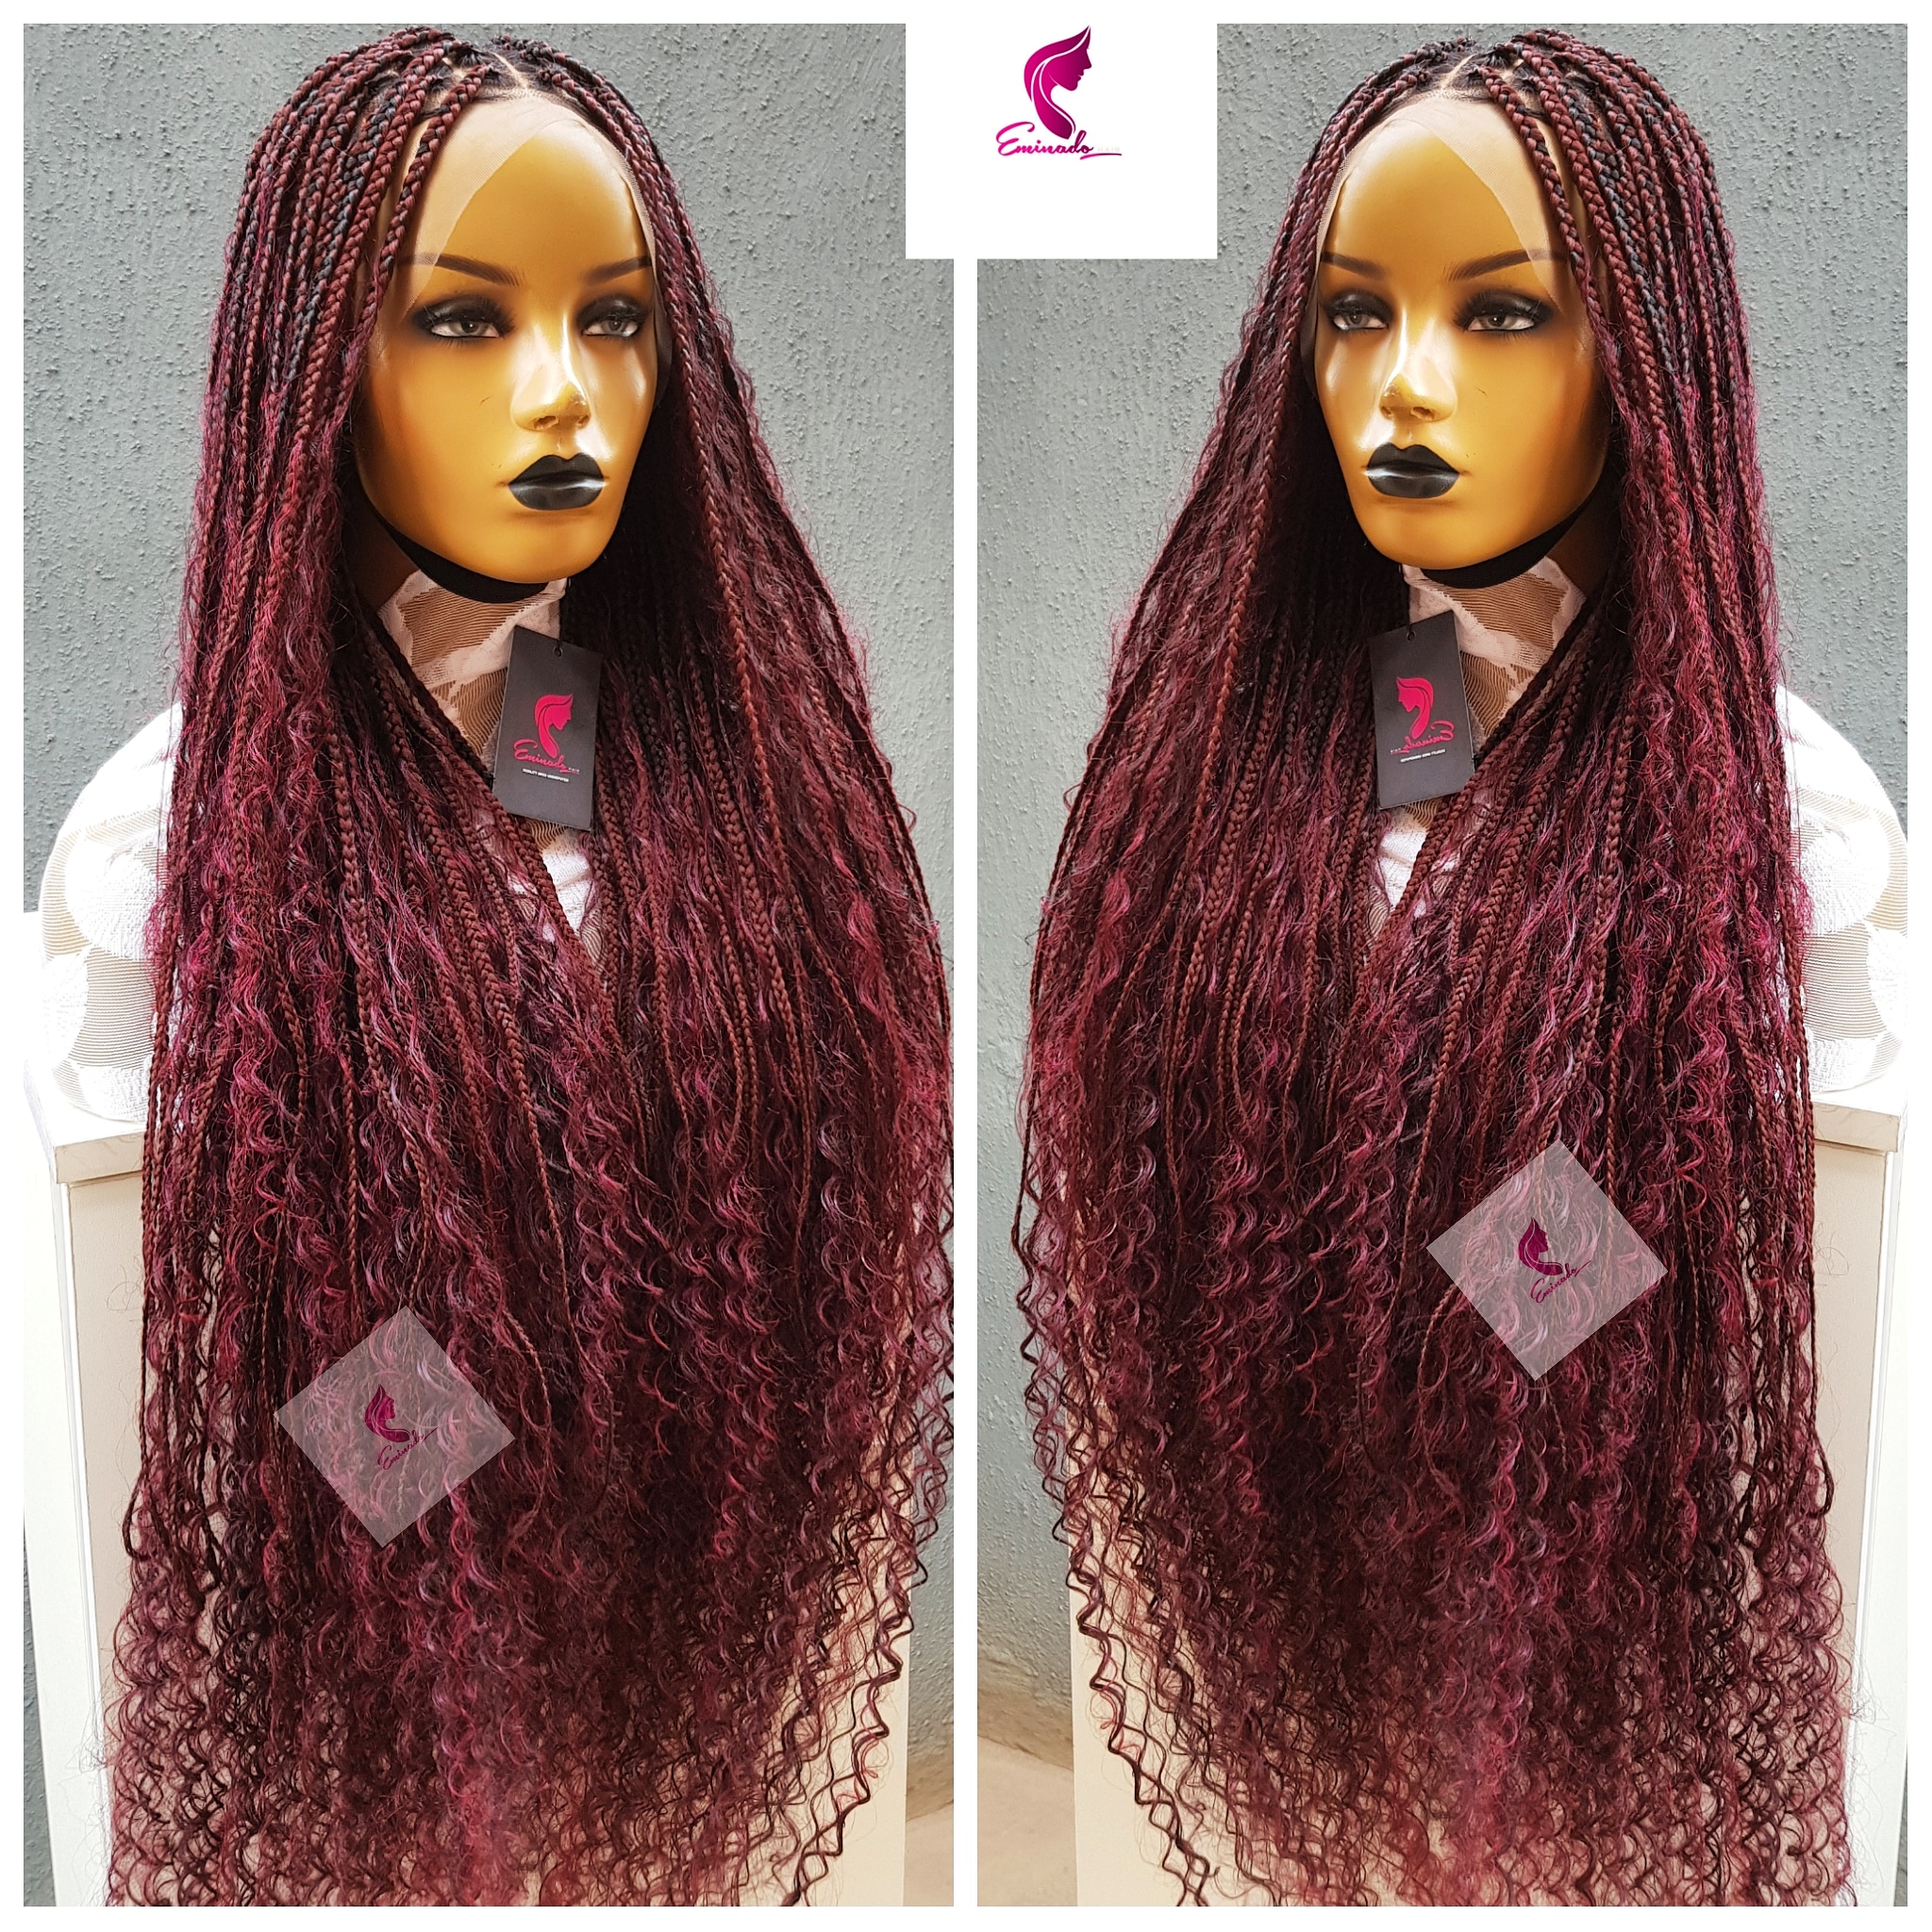 burgundy knotless braids by Swooshum on DeviantArt